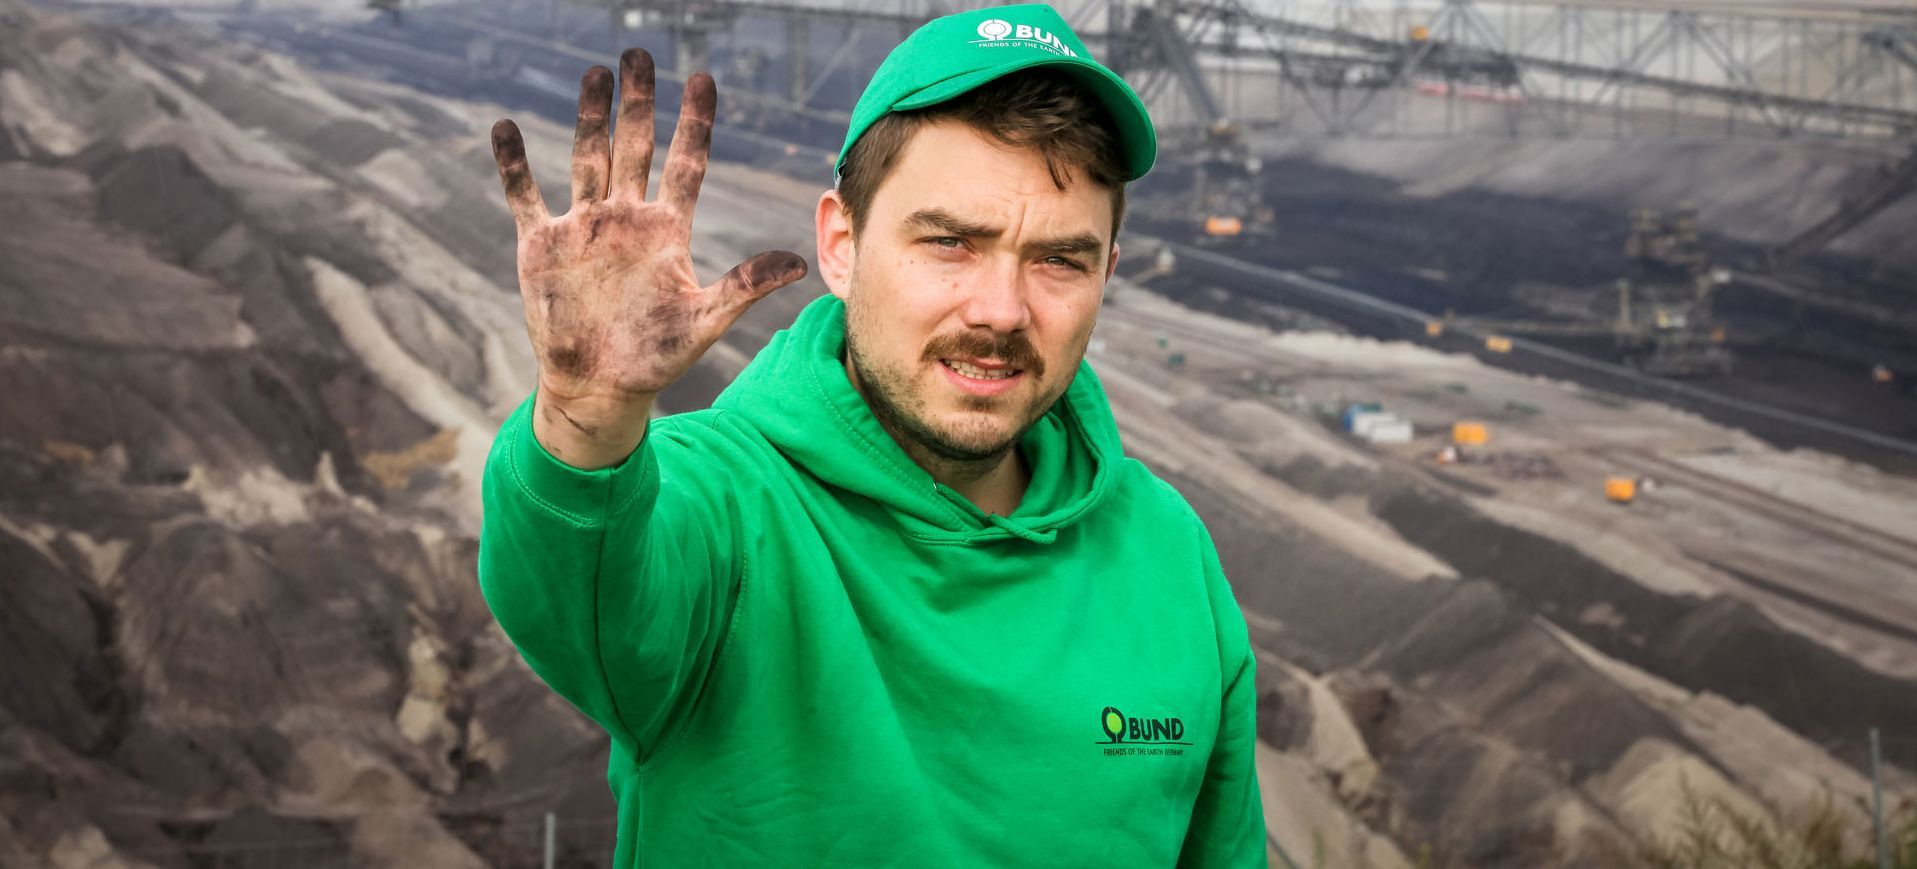 Impression von der Anti-Kohle-Kette am 23.8.14 in der Lausitz; Foto: Jakob Huber